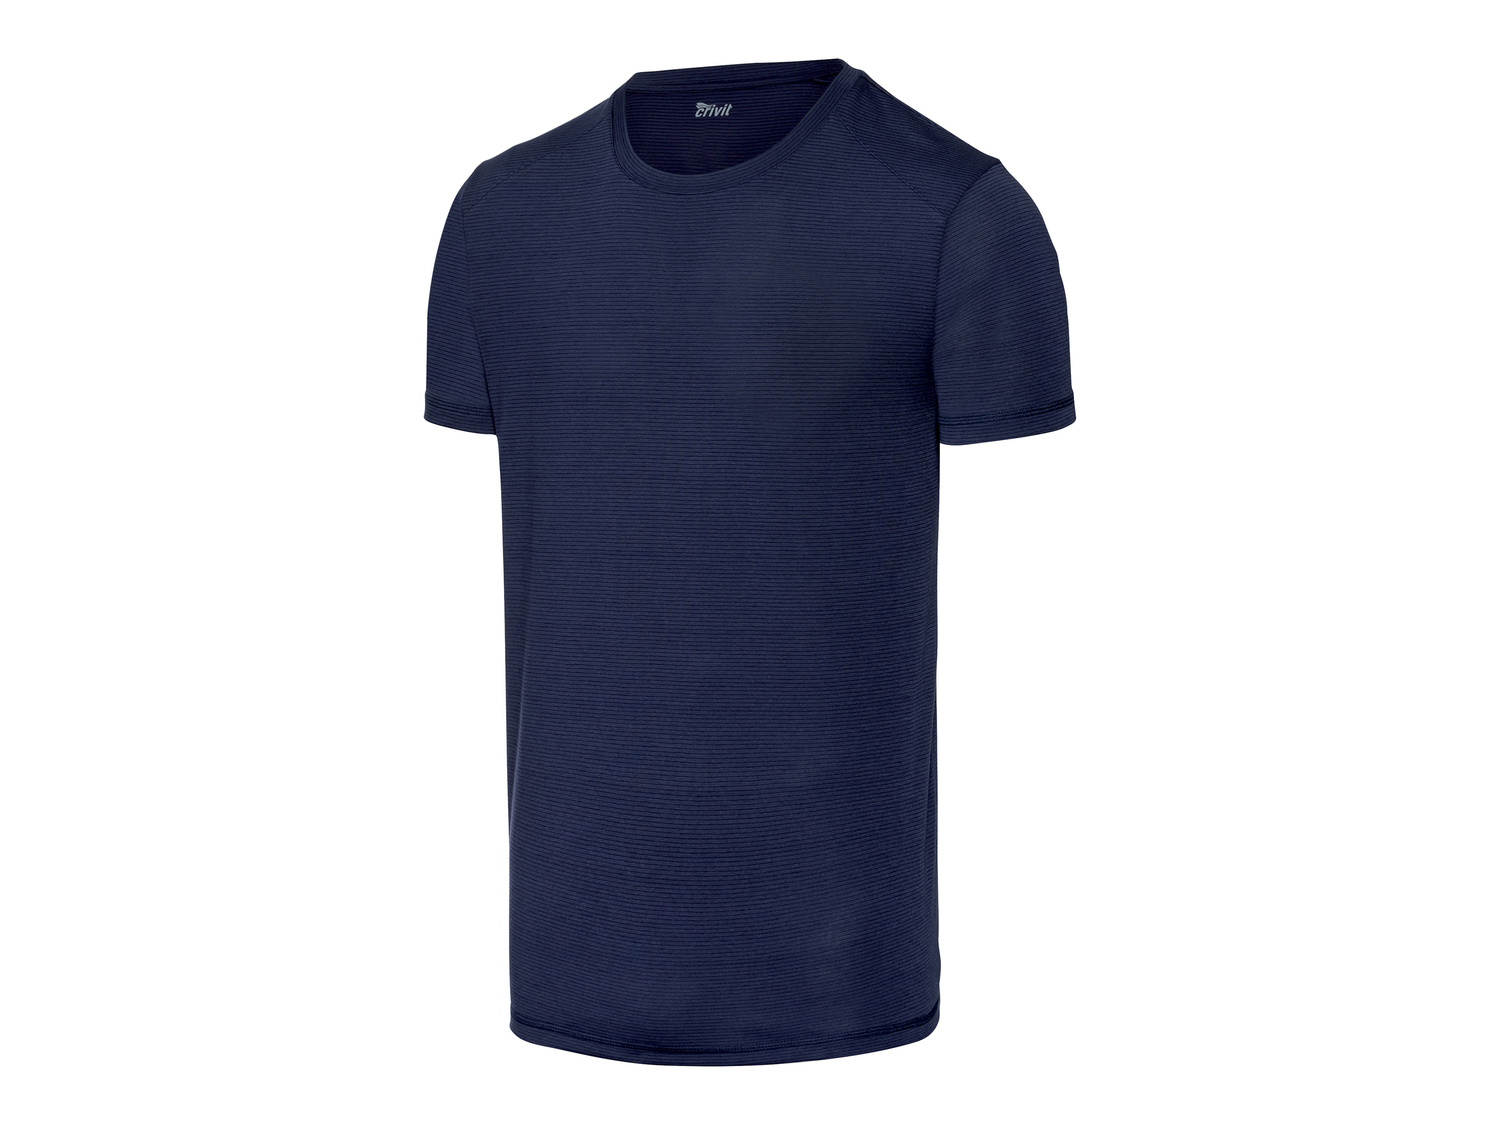 T-shirt sportiva da uomo Crivit, prezzo 4.99 &#8364; 
Misure: S-XL
Taglie disponibili

Caratteristiche

- ...